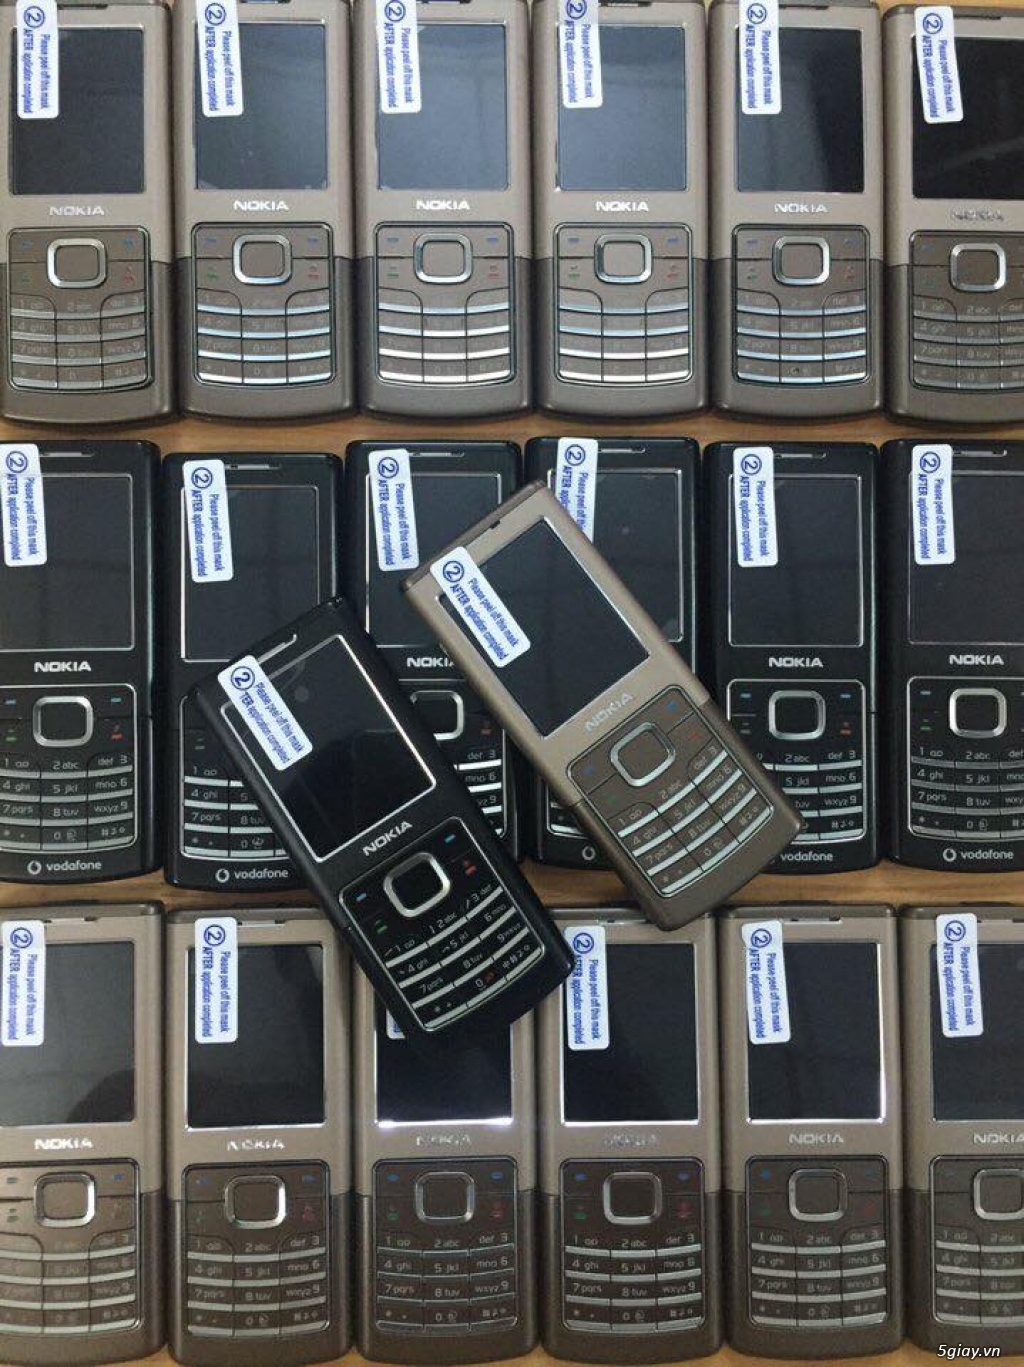 Nokia 6500 Classic Chính Hãng Giá Rẻ TP HCM - 1